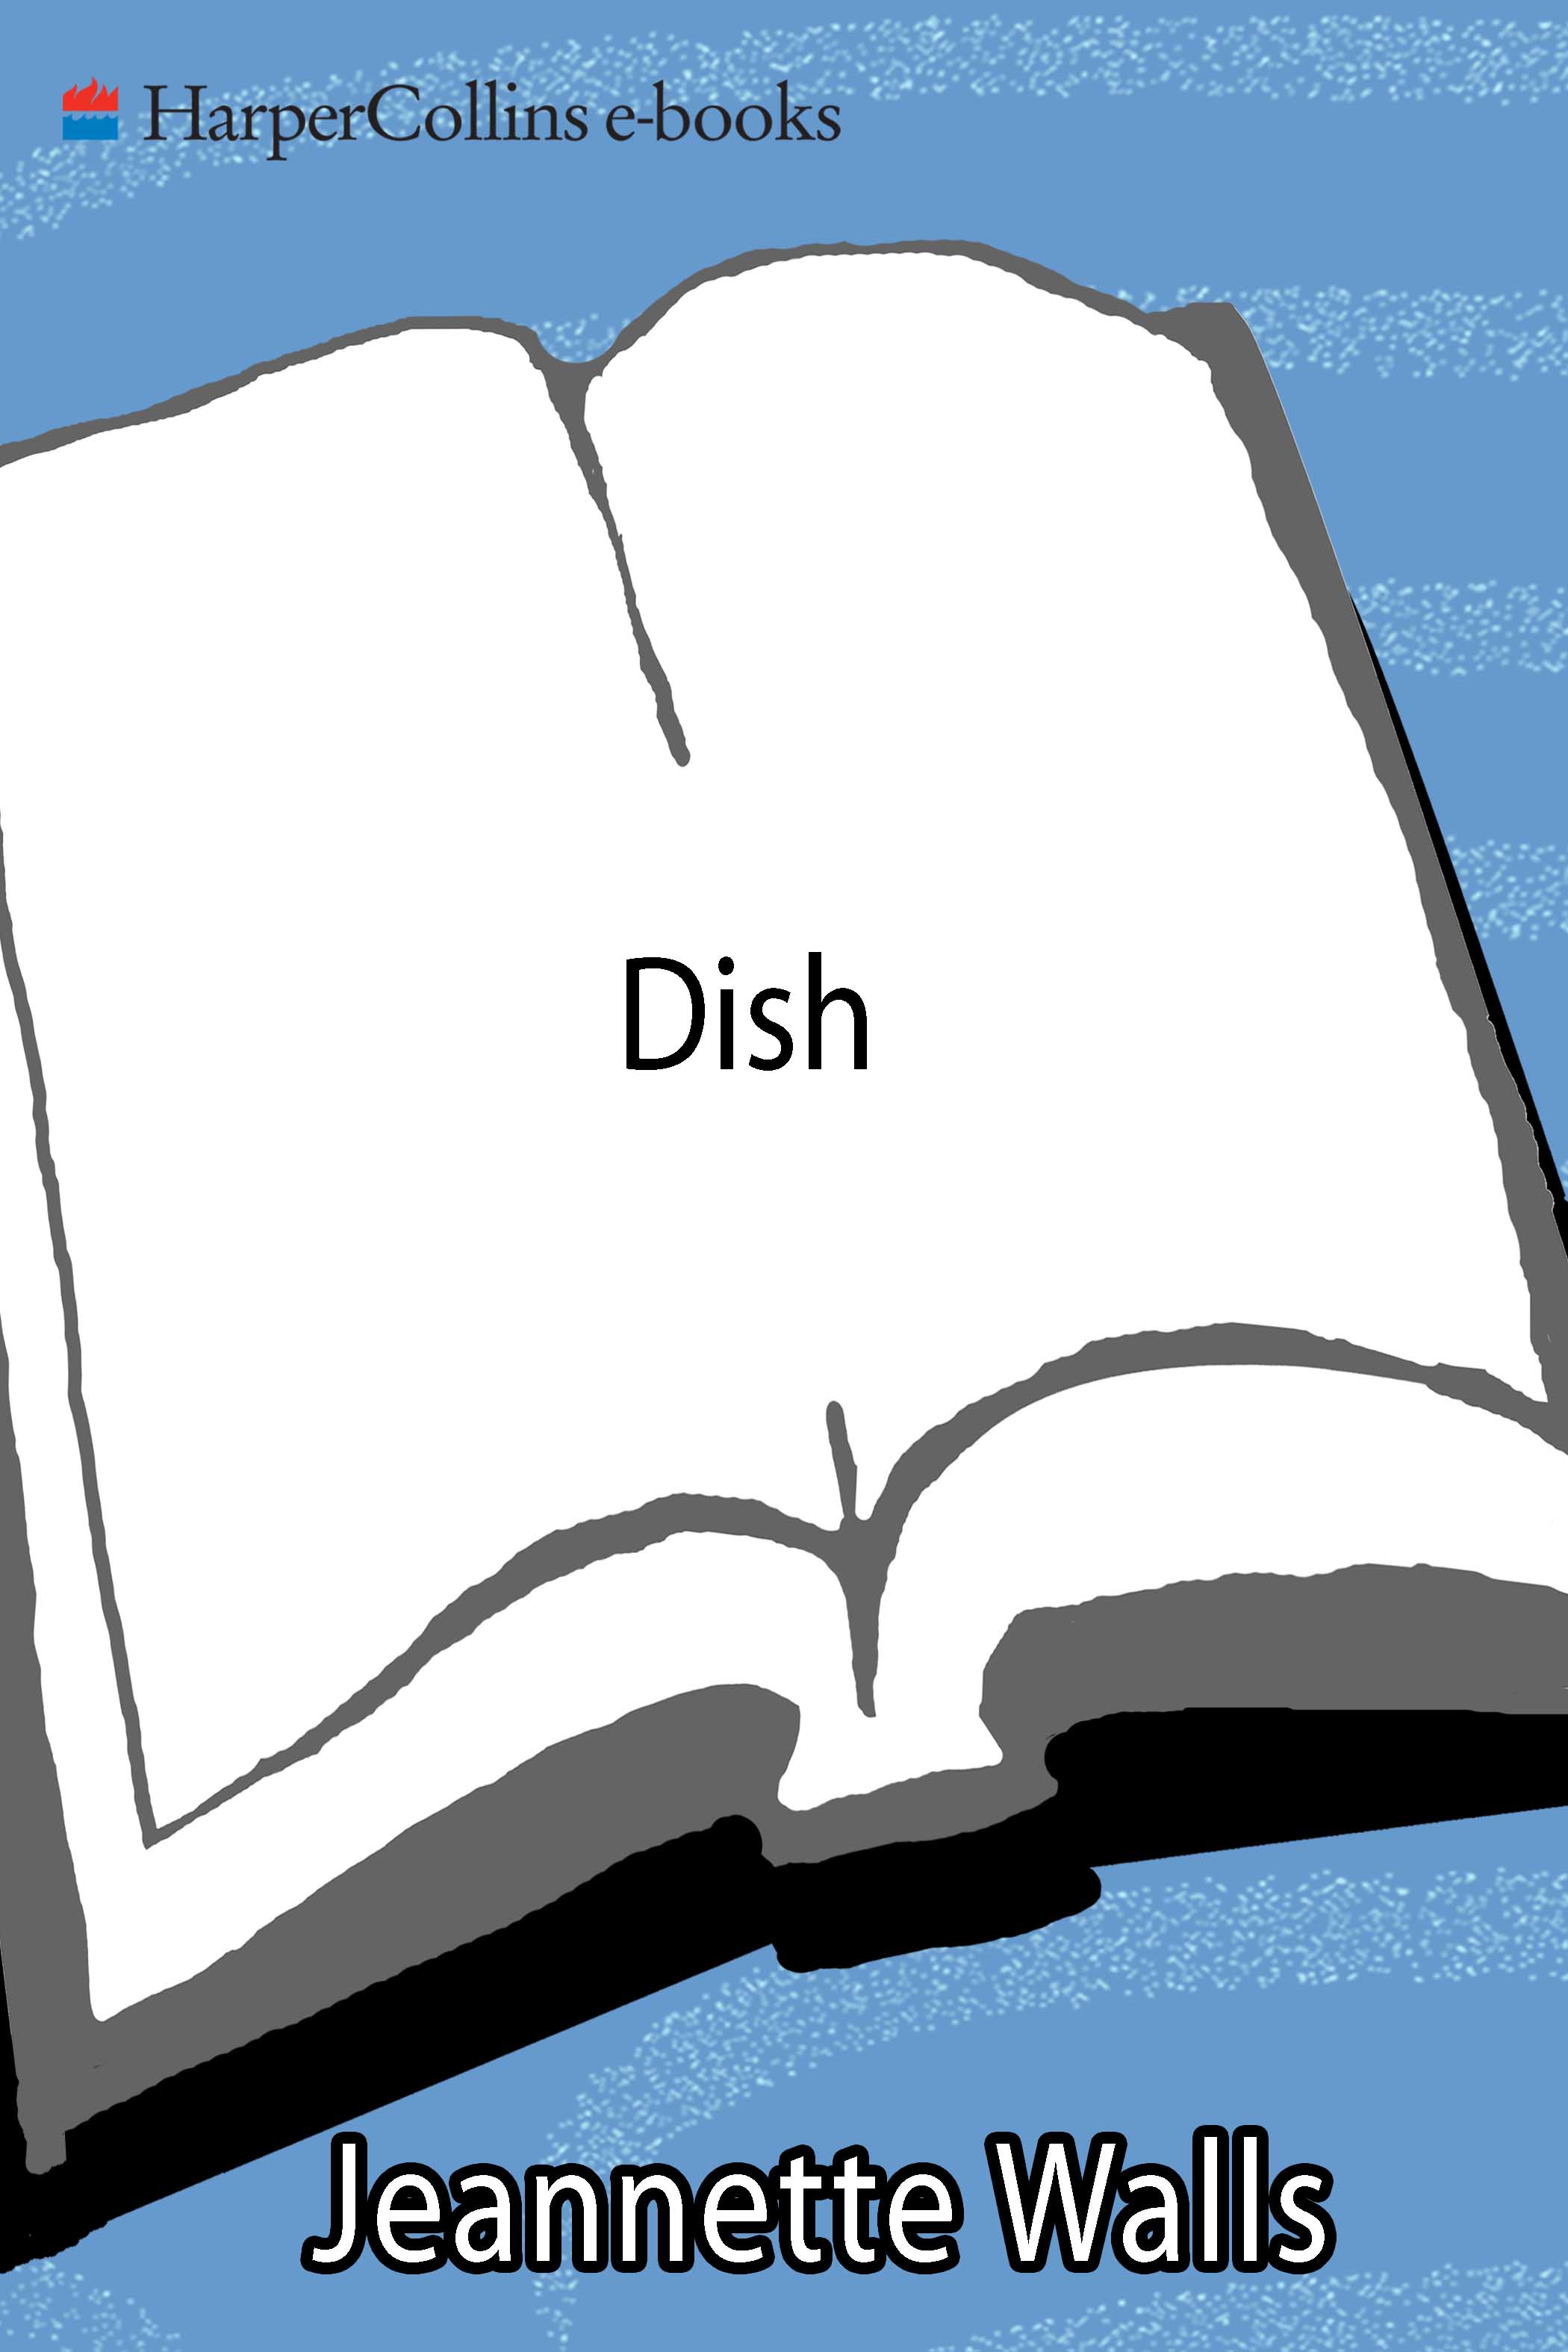 Dish (2000)